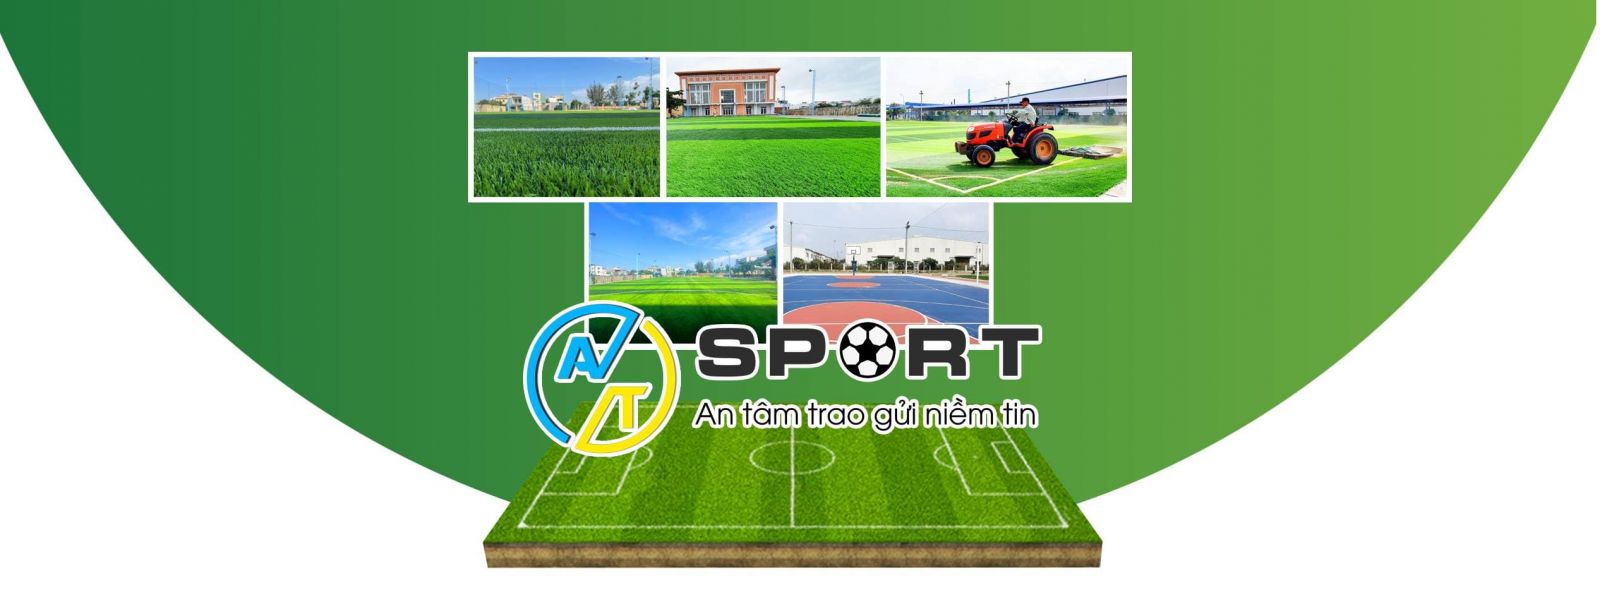 Thi công cỏ nhân tạo sân bóng đá huyện Cư Kuin, Đắk Lắk